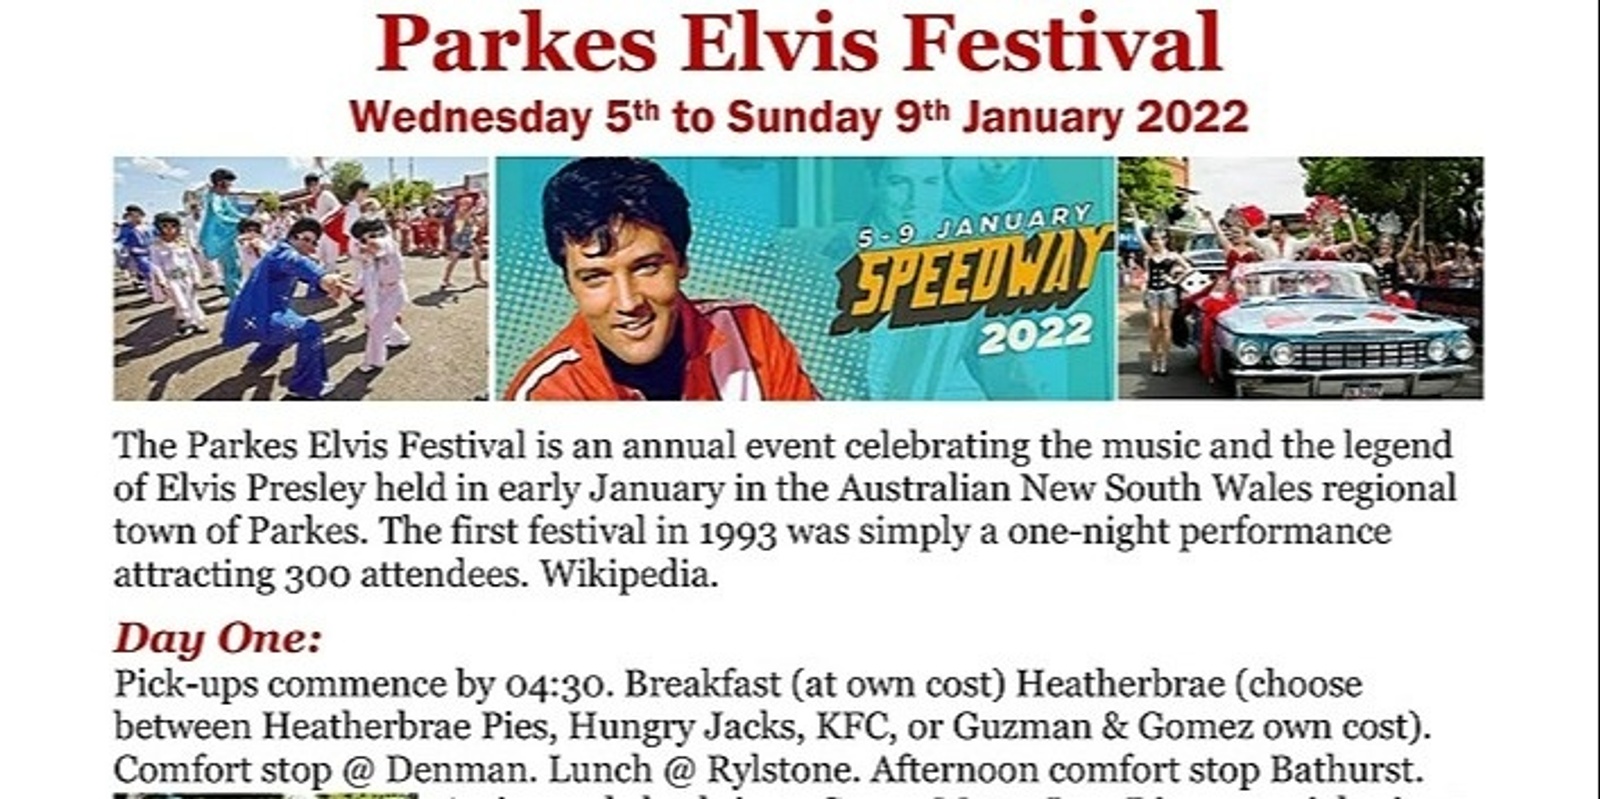 Banner image for Parkes Elvis Festival 2022